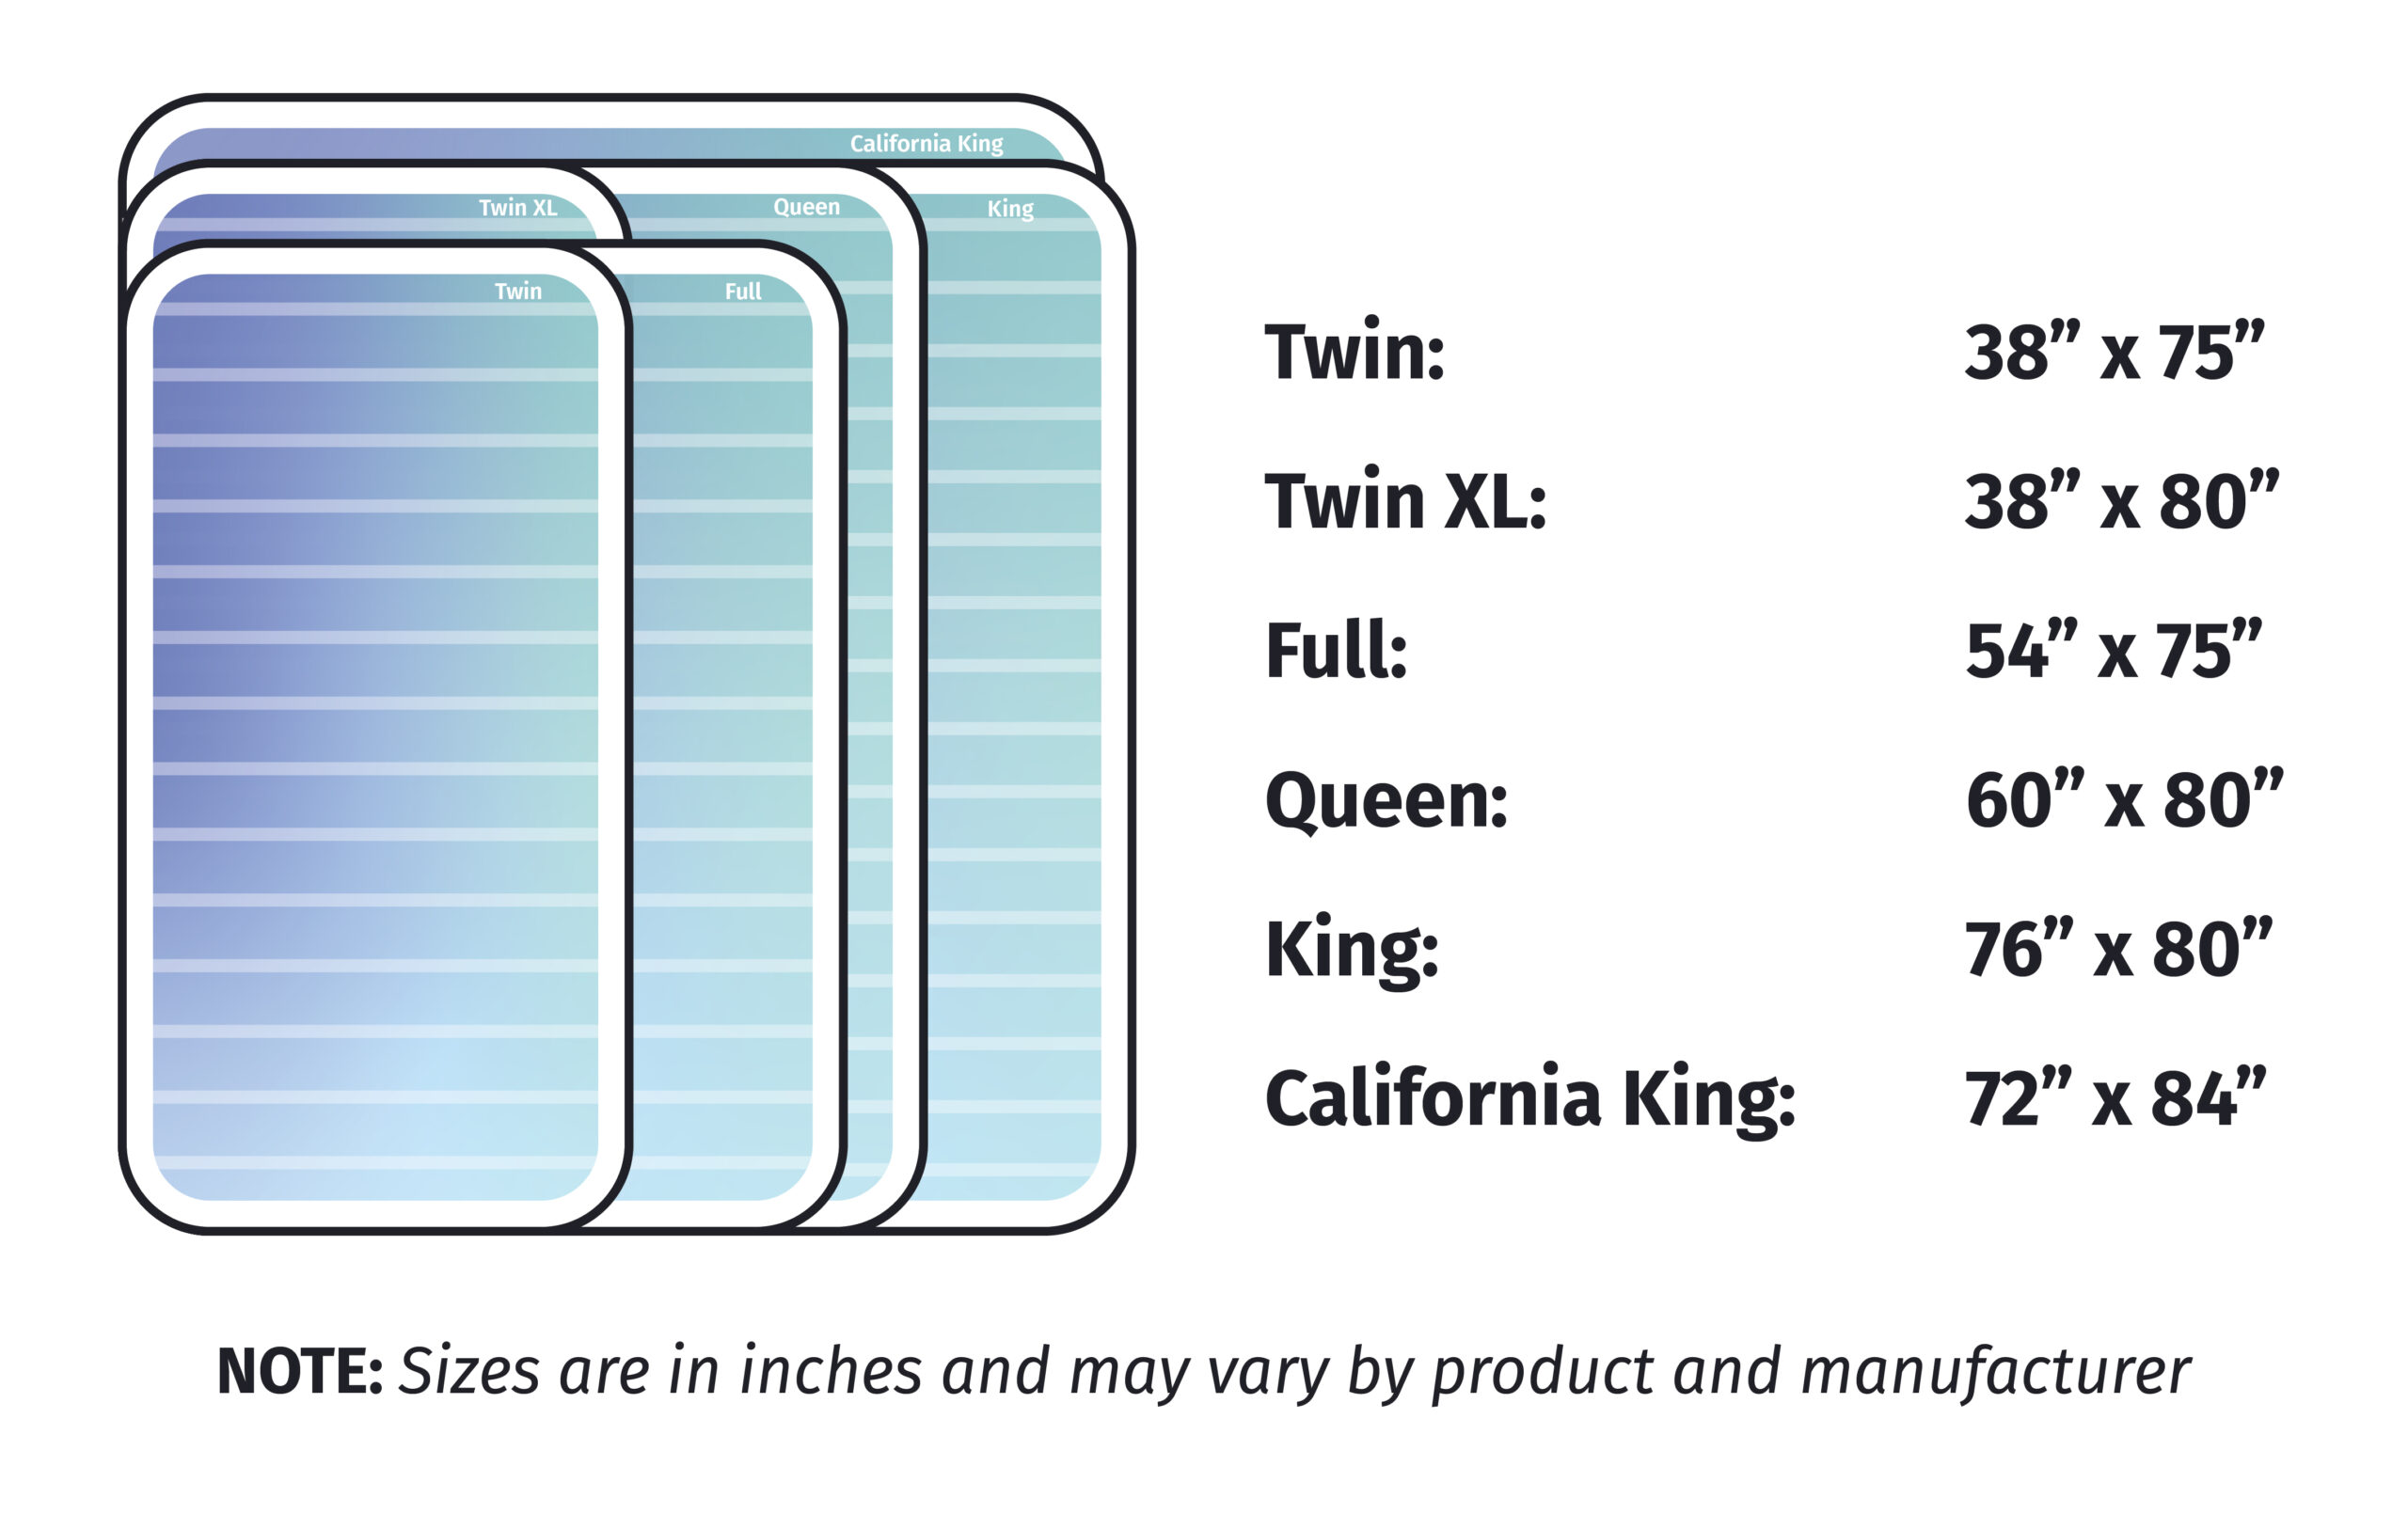 mattress size comparison graphic